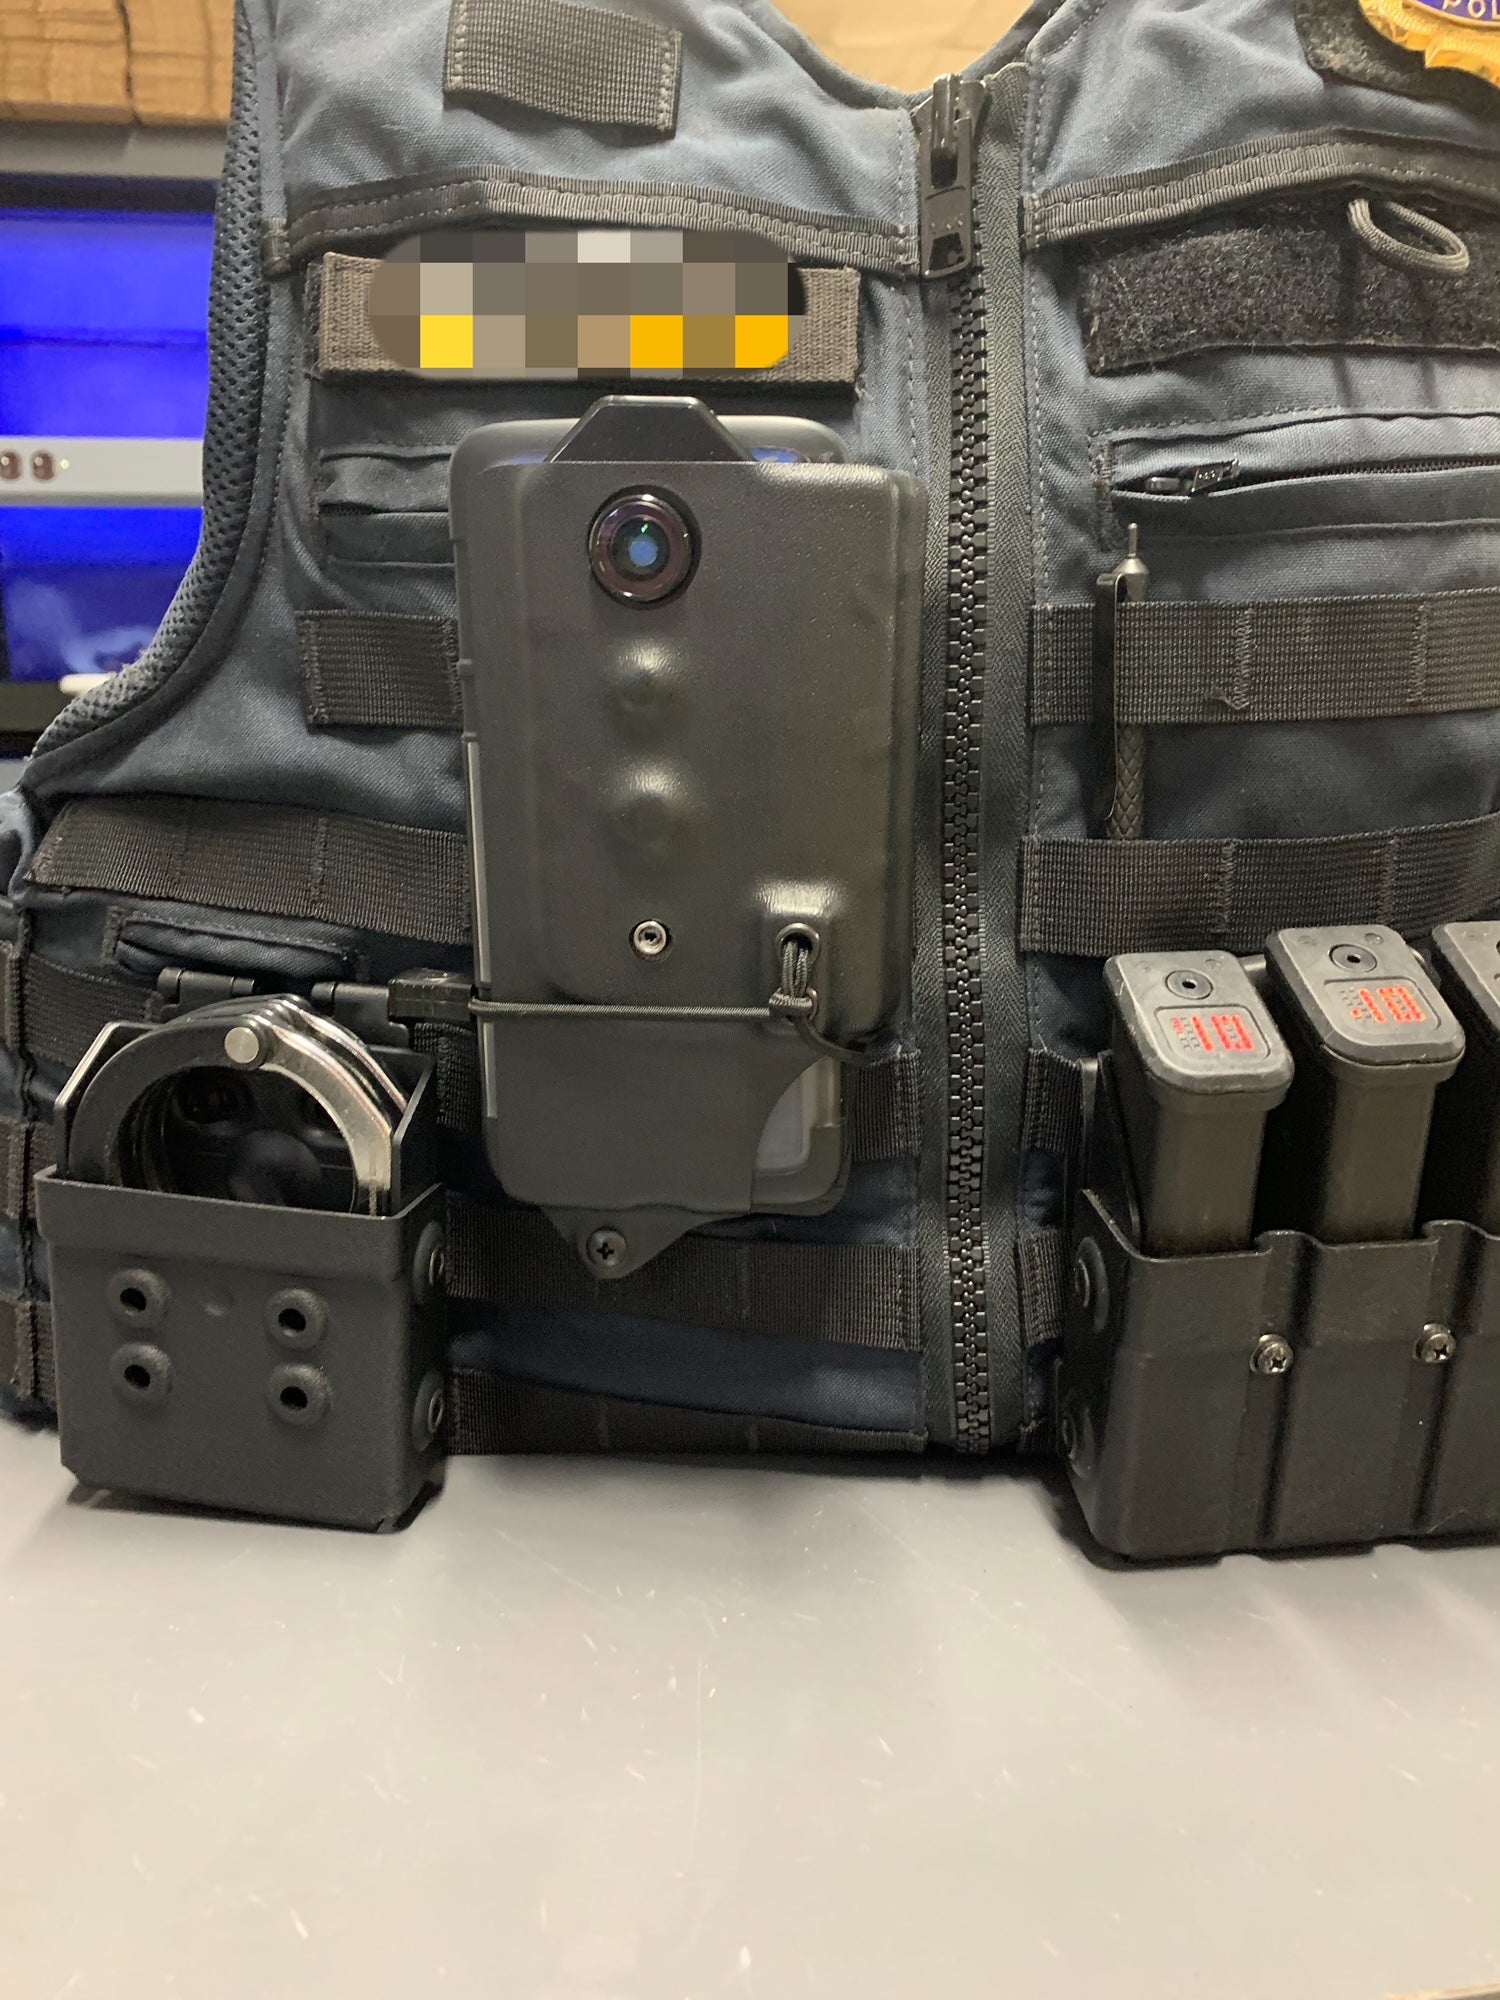 Eyewitness Police Body Cam - wireless bodyworn camera system